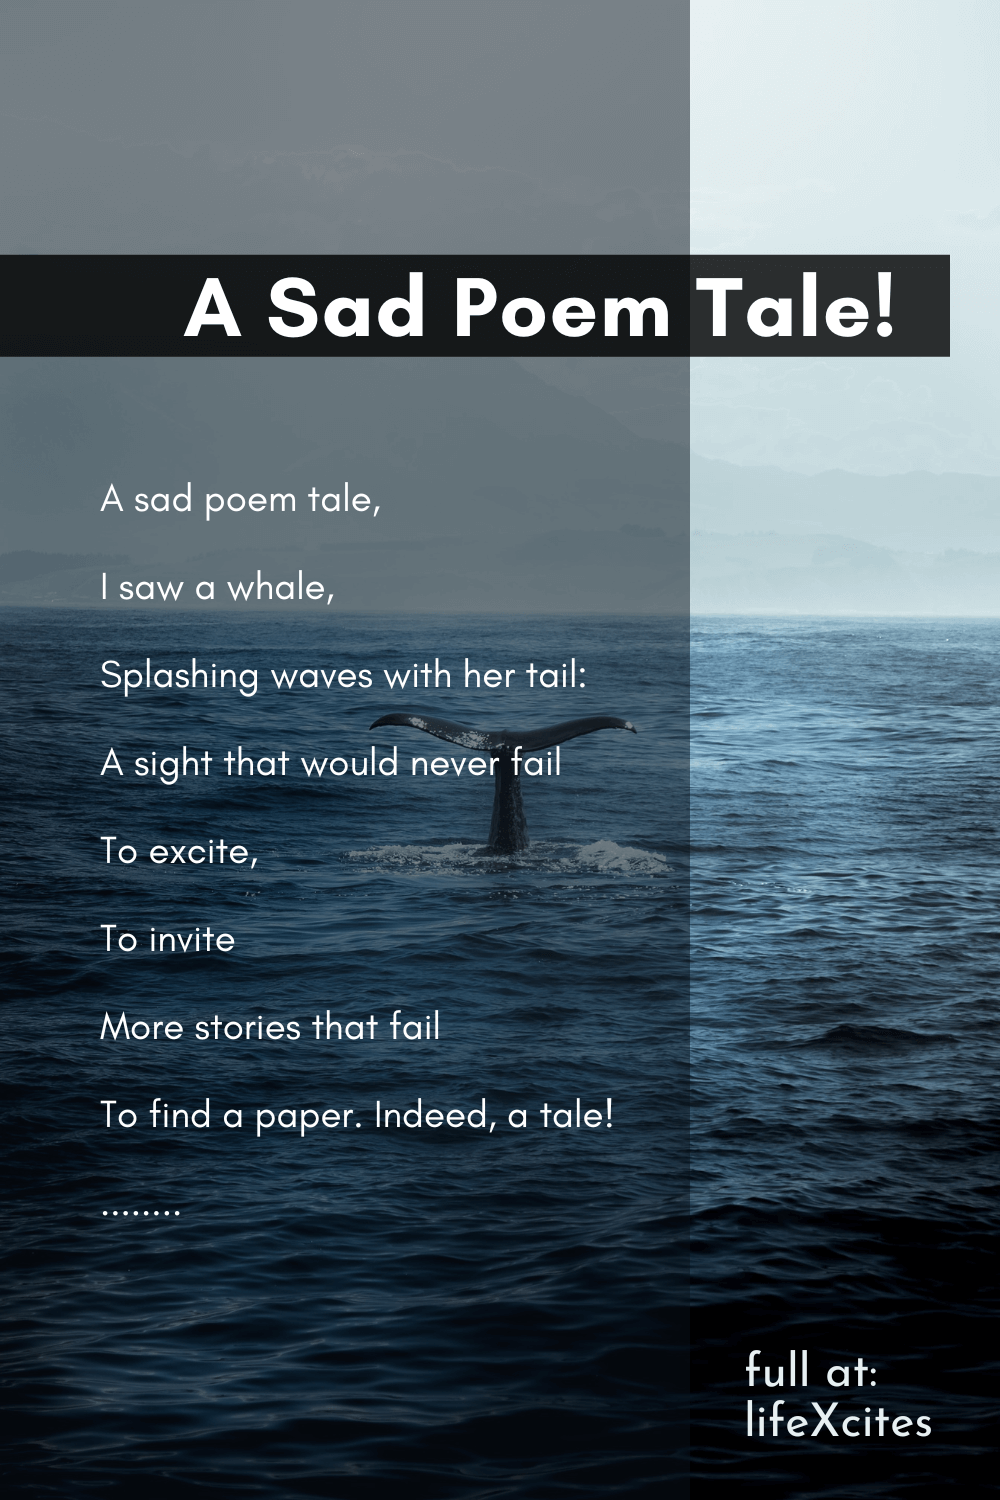 A Sad Poem Tale!